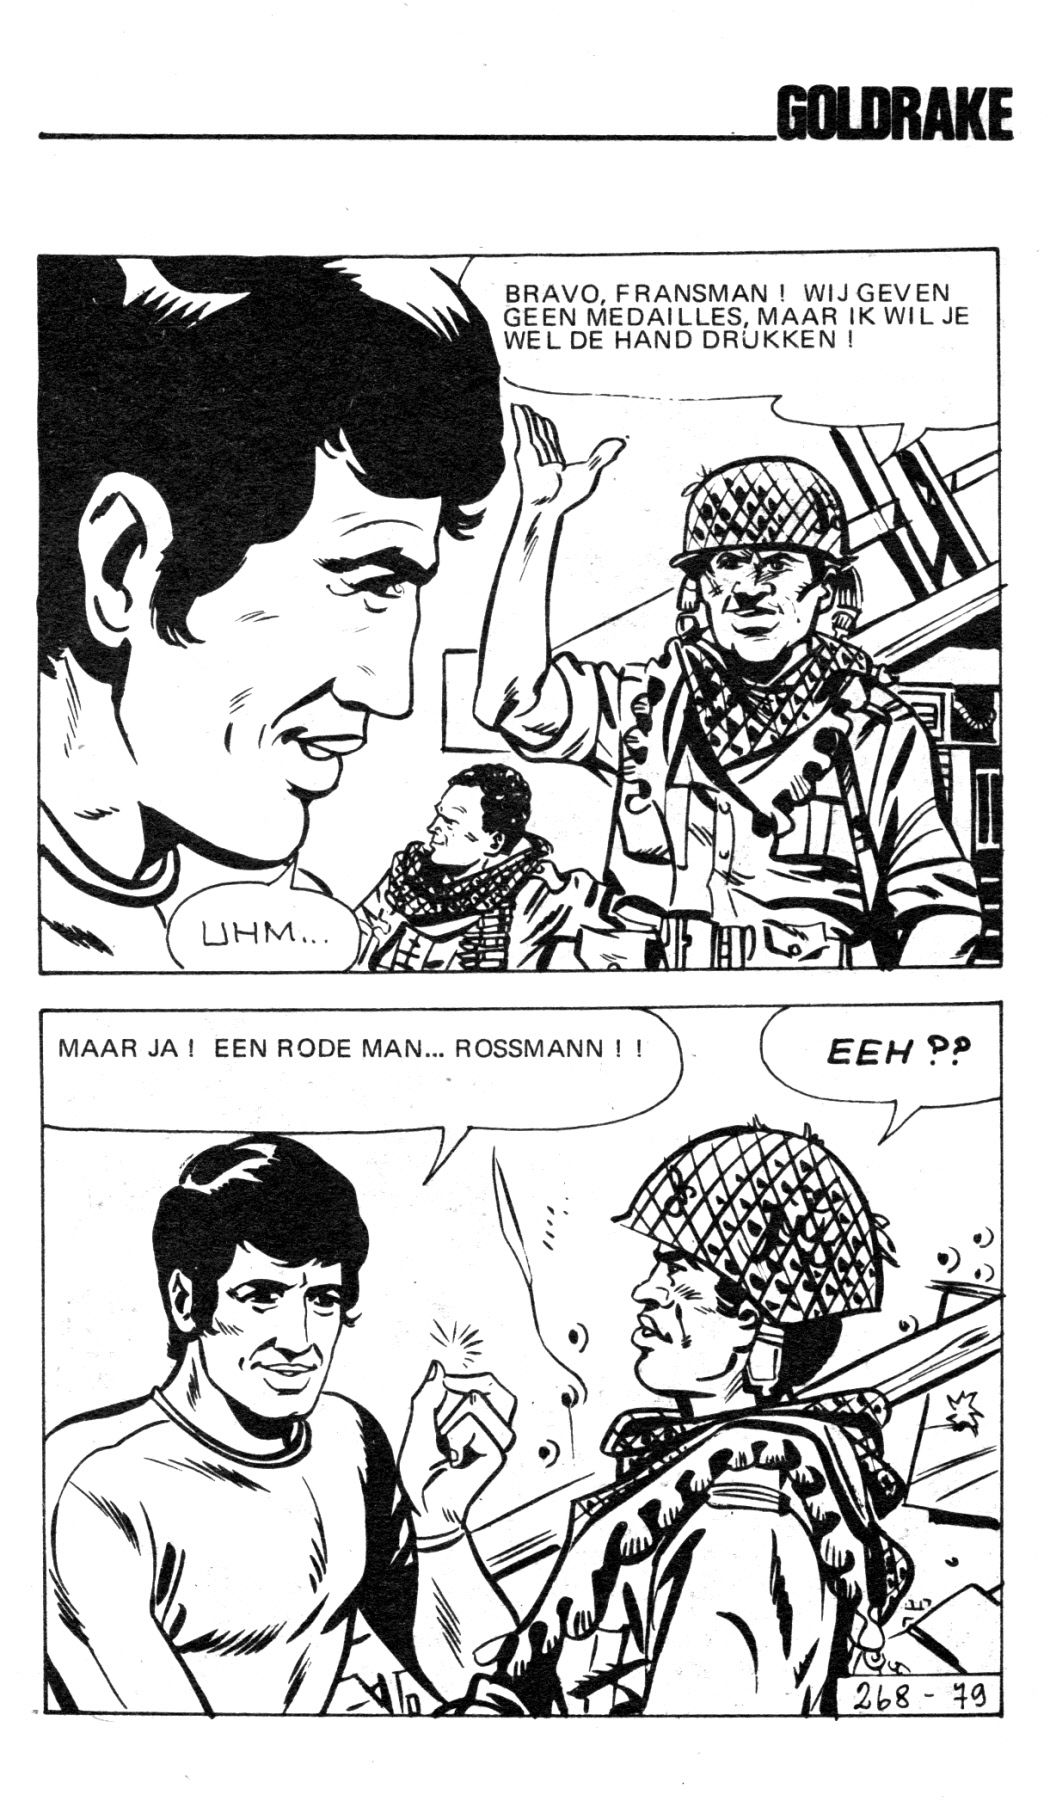 Goldrake - 62 - De Libanees (Dutch) In 5 series...78 Nog niet geplaatste strips uit de "Goldrake" serie 81